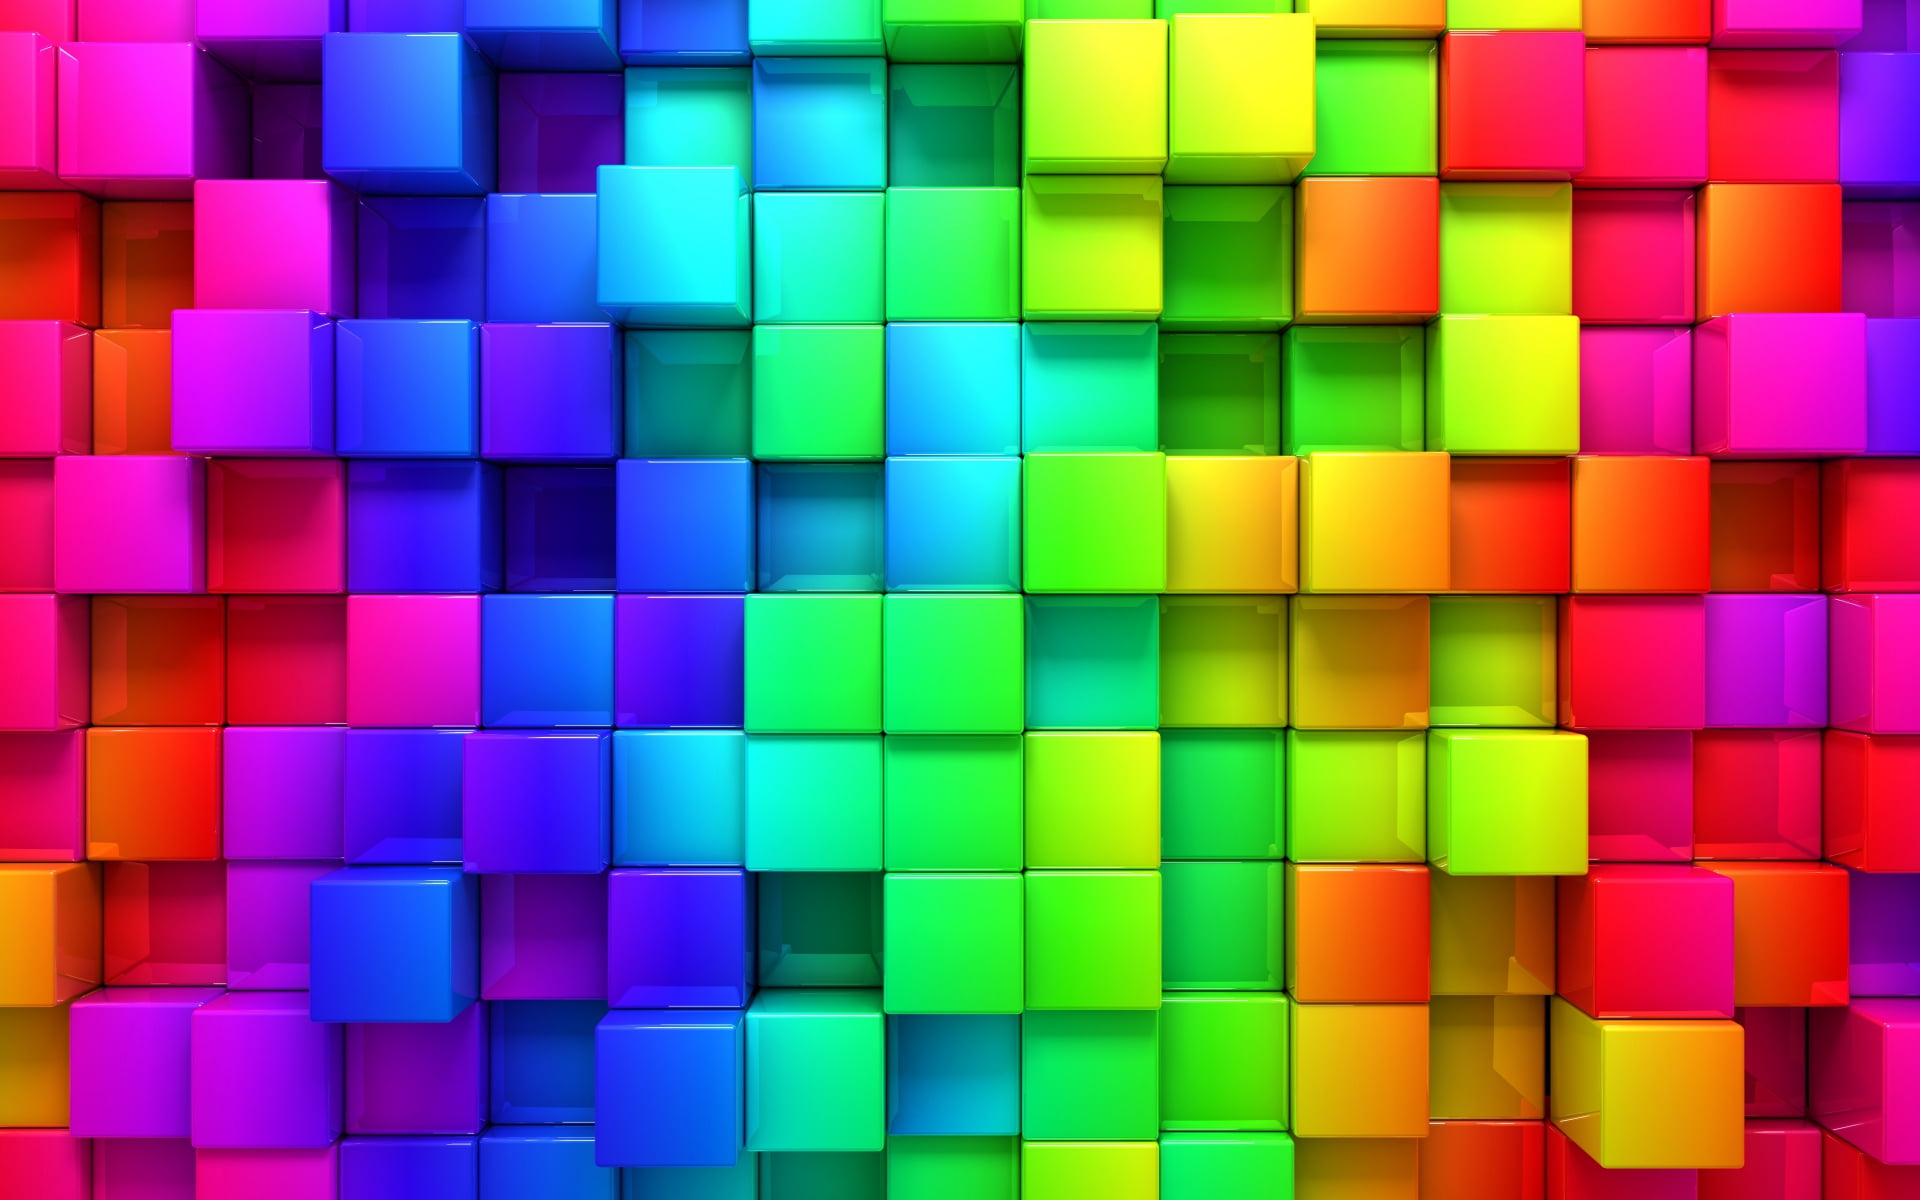 Hình nền HD với họa tiết hình khối màu xanh dương, xanh lá, vàng, hồng và đỏ sẽ khiến bạn phải say đắm. Những màu sắc bắt mắt và họa tiết bao gồm các màu tươi sáng ấy sẽ khiến cho chủ nhân của màn hình này trở nên đối diện với một tác phẩm nghệ thuật thực sự.